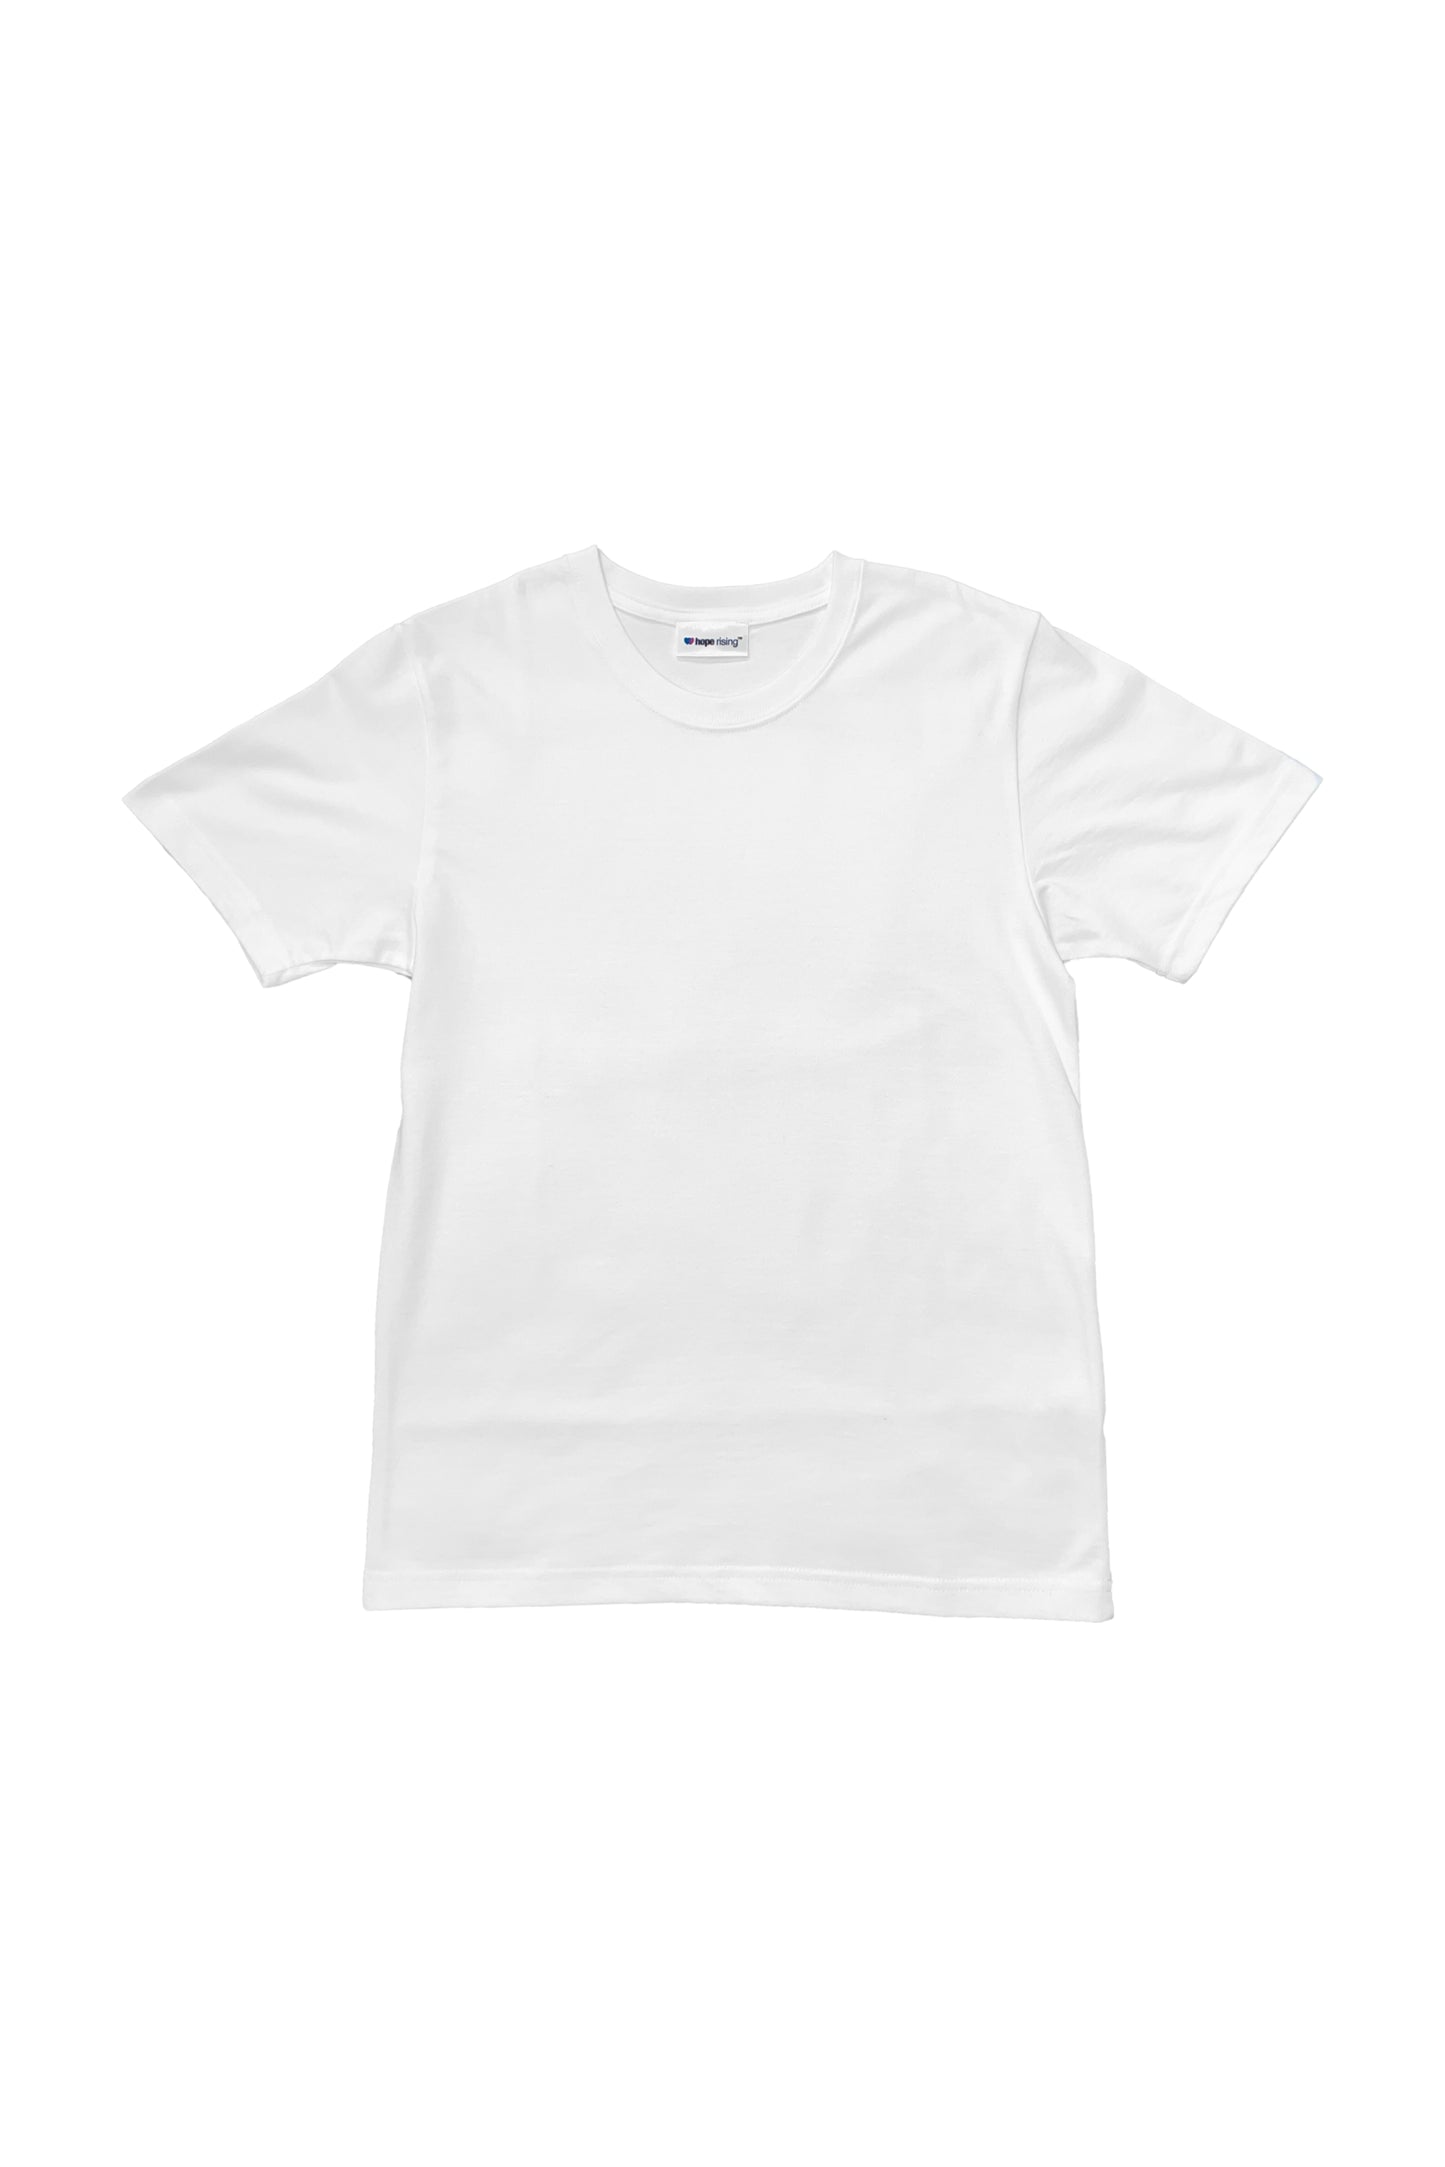 Classic Heavyweight T-shirt - White